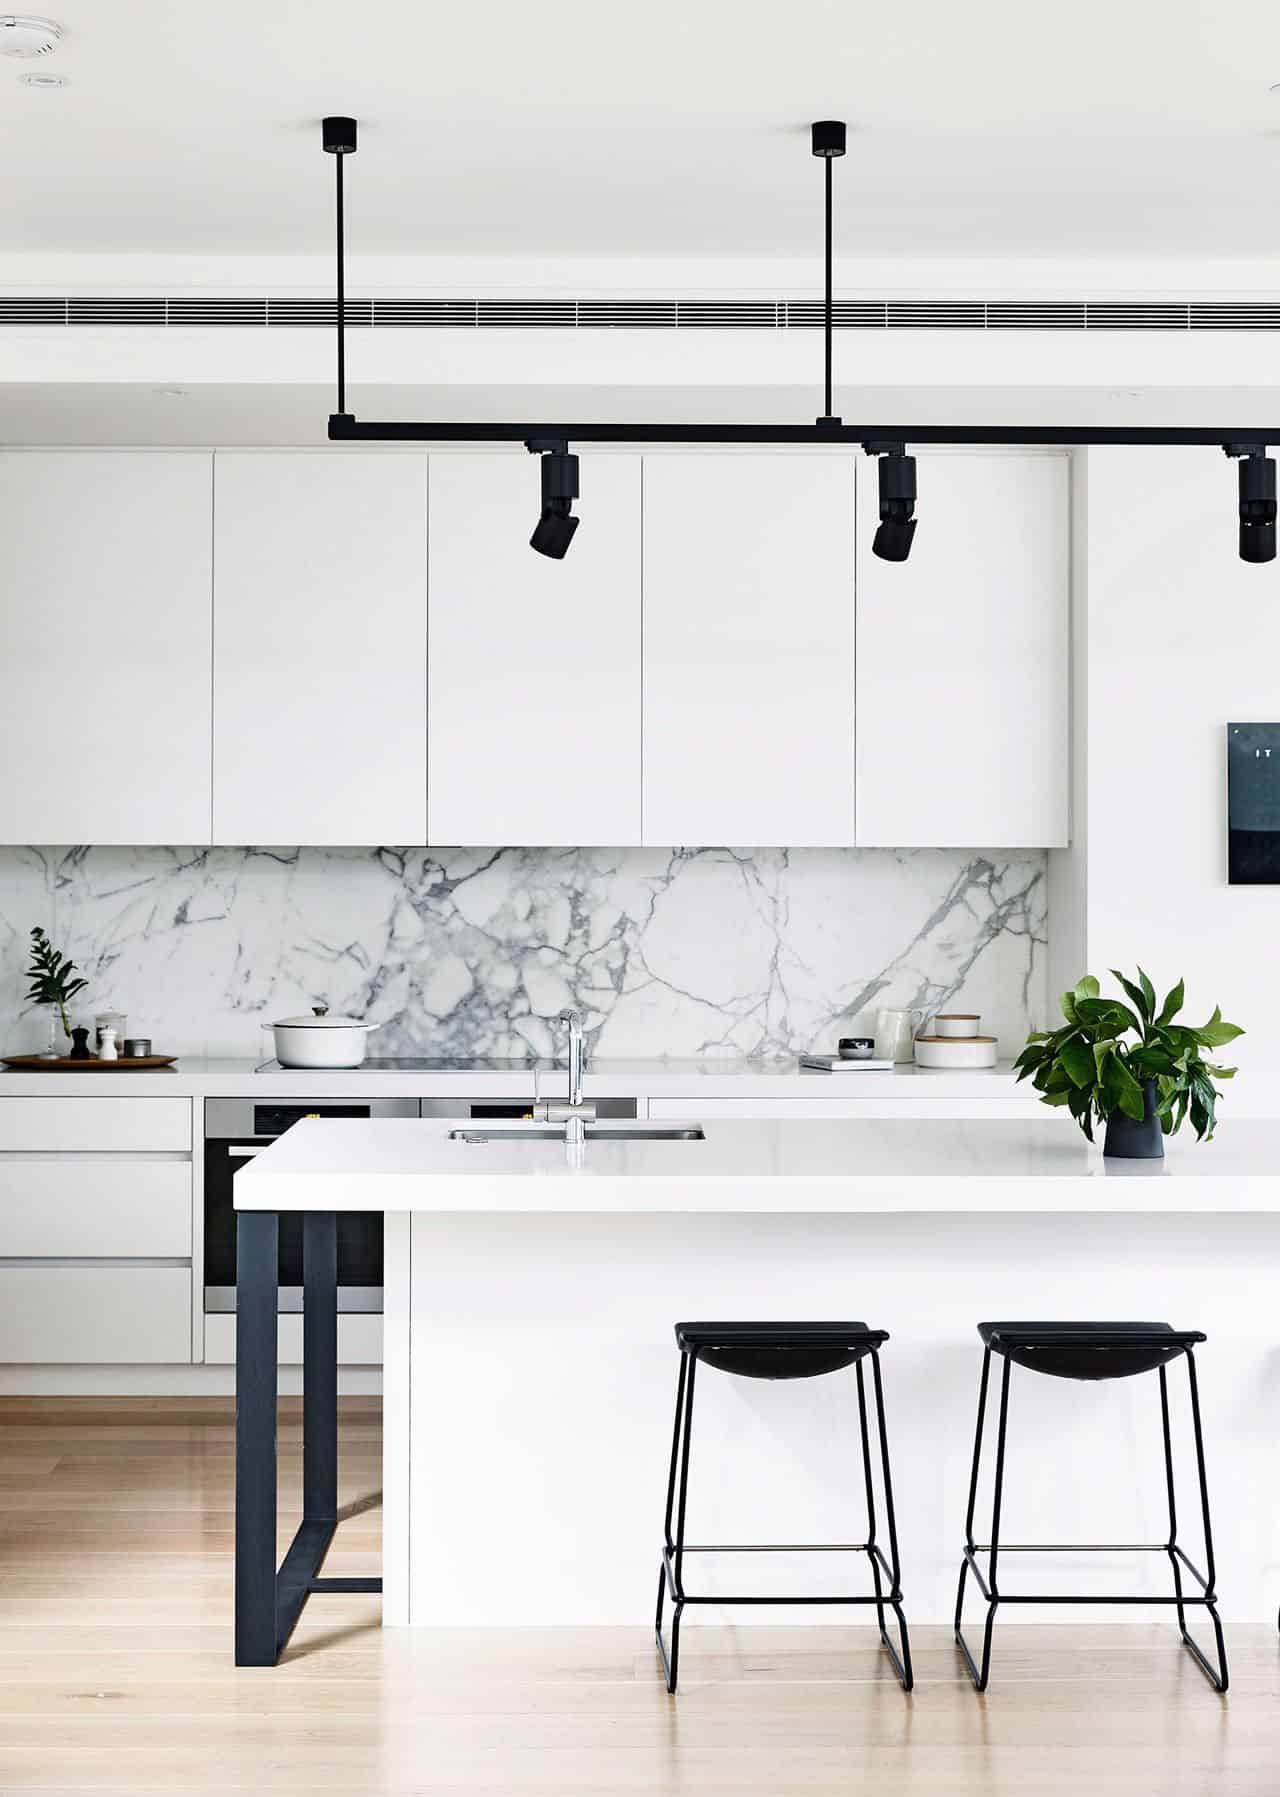 Contemporary Small Kitchen Design Ideas,2020 Grand Design Reflection 315rlts